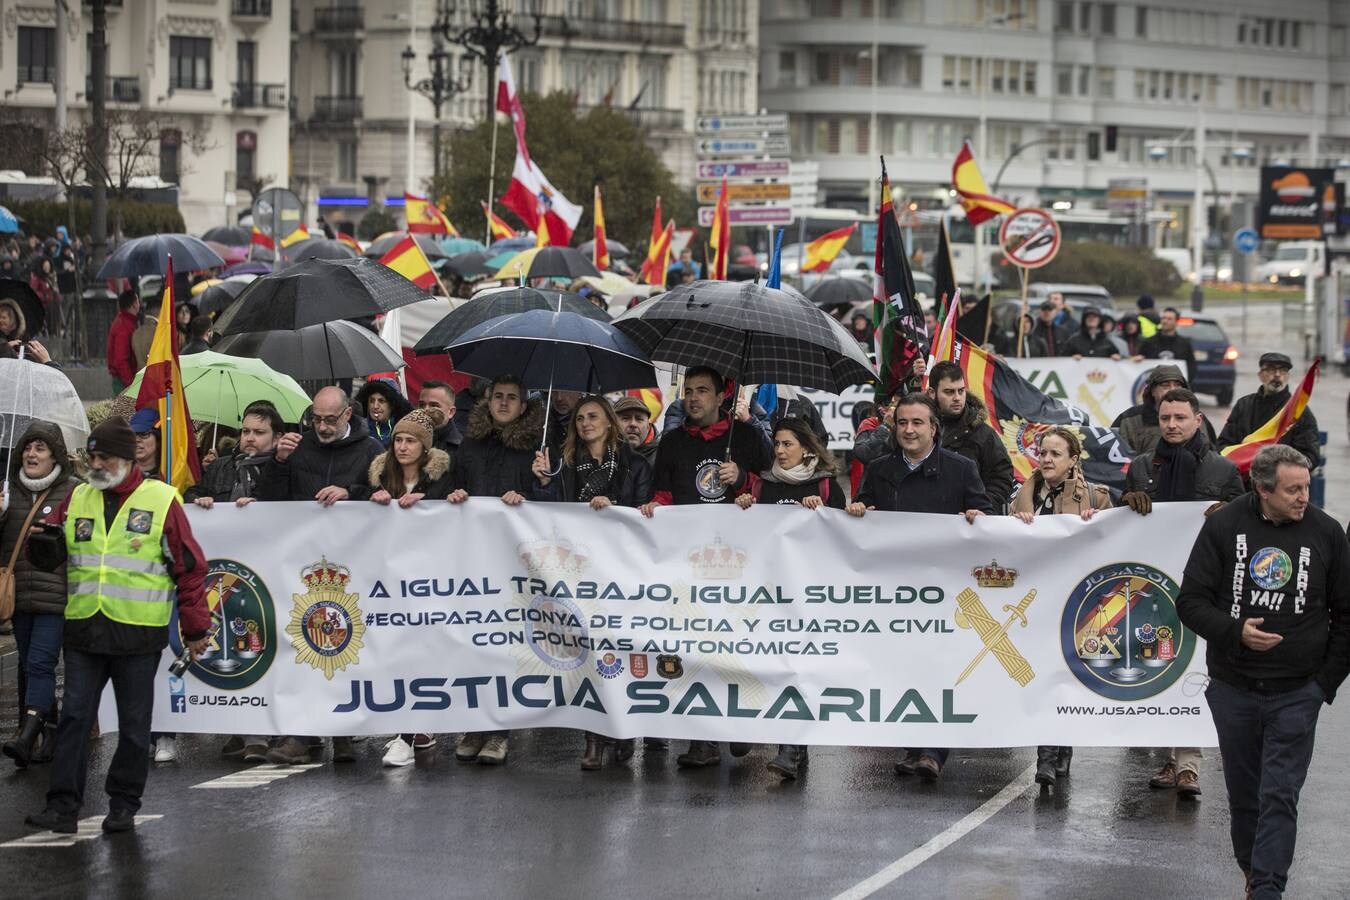 Fotos: Manifestación organizada por Jusapol para la equiparación salarial de todas las policías de España